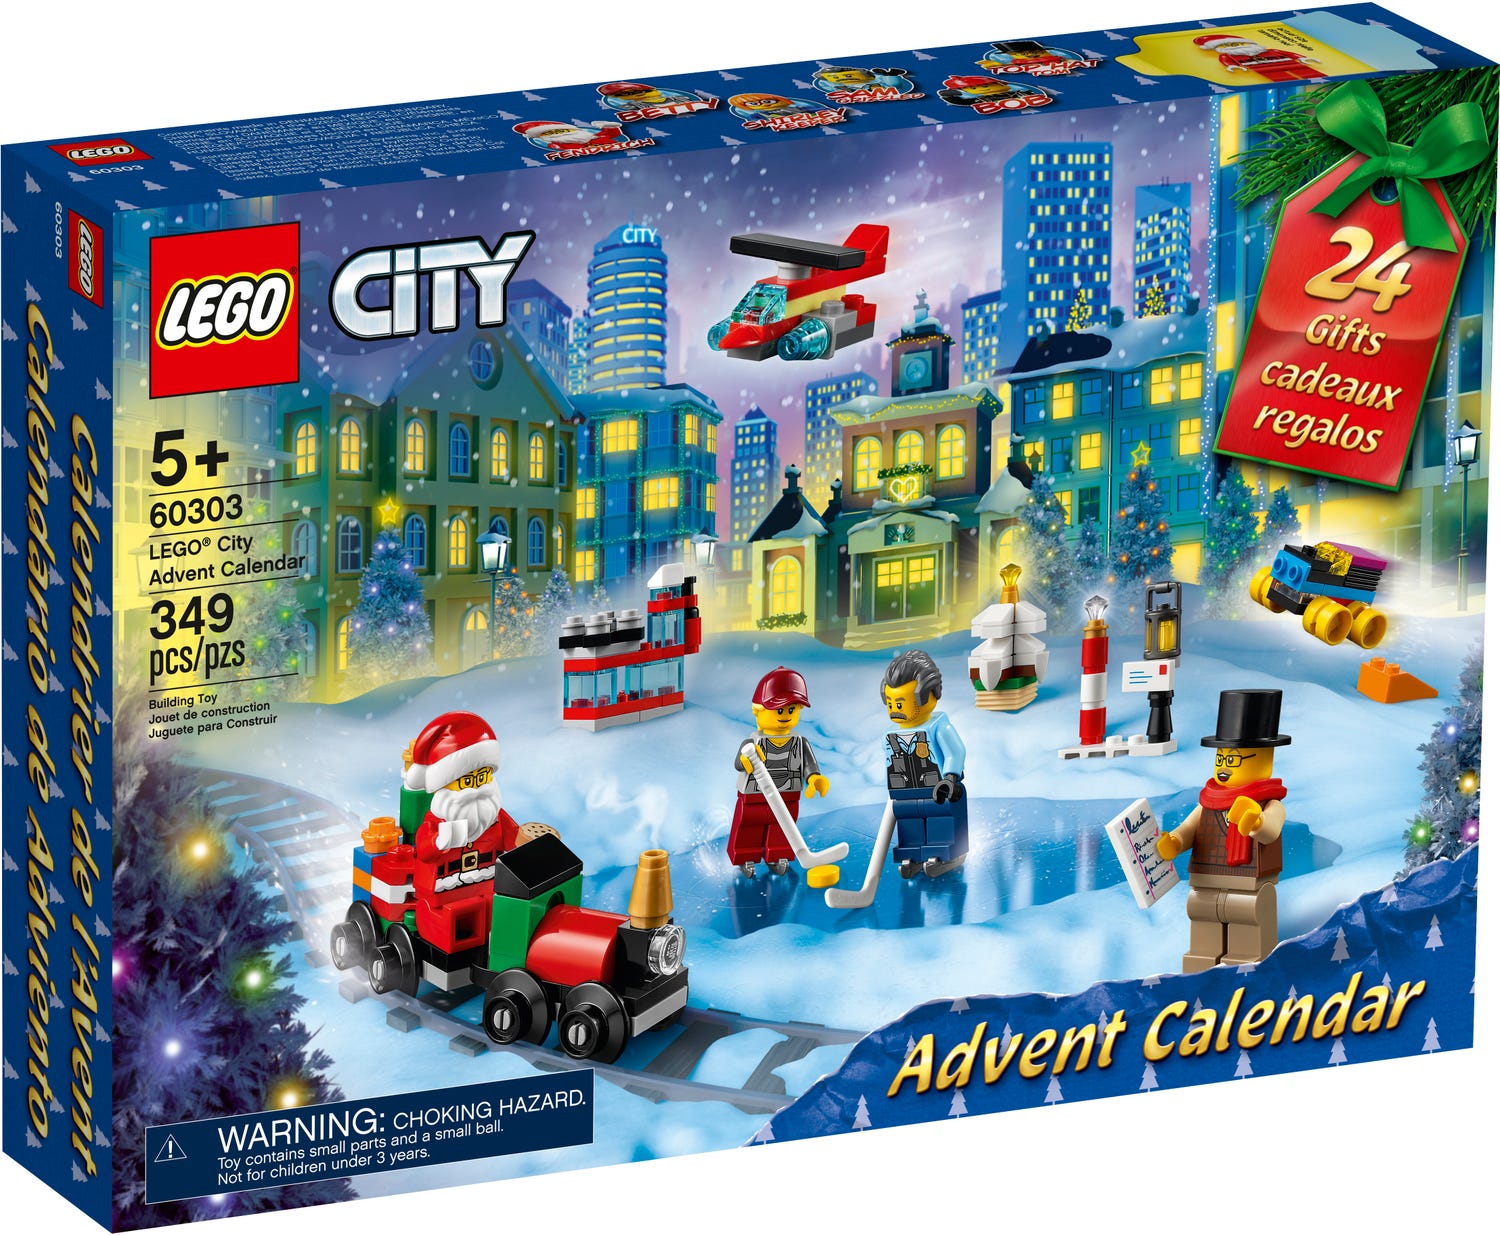 LEGO City Advent Calendar 2021